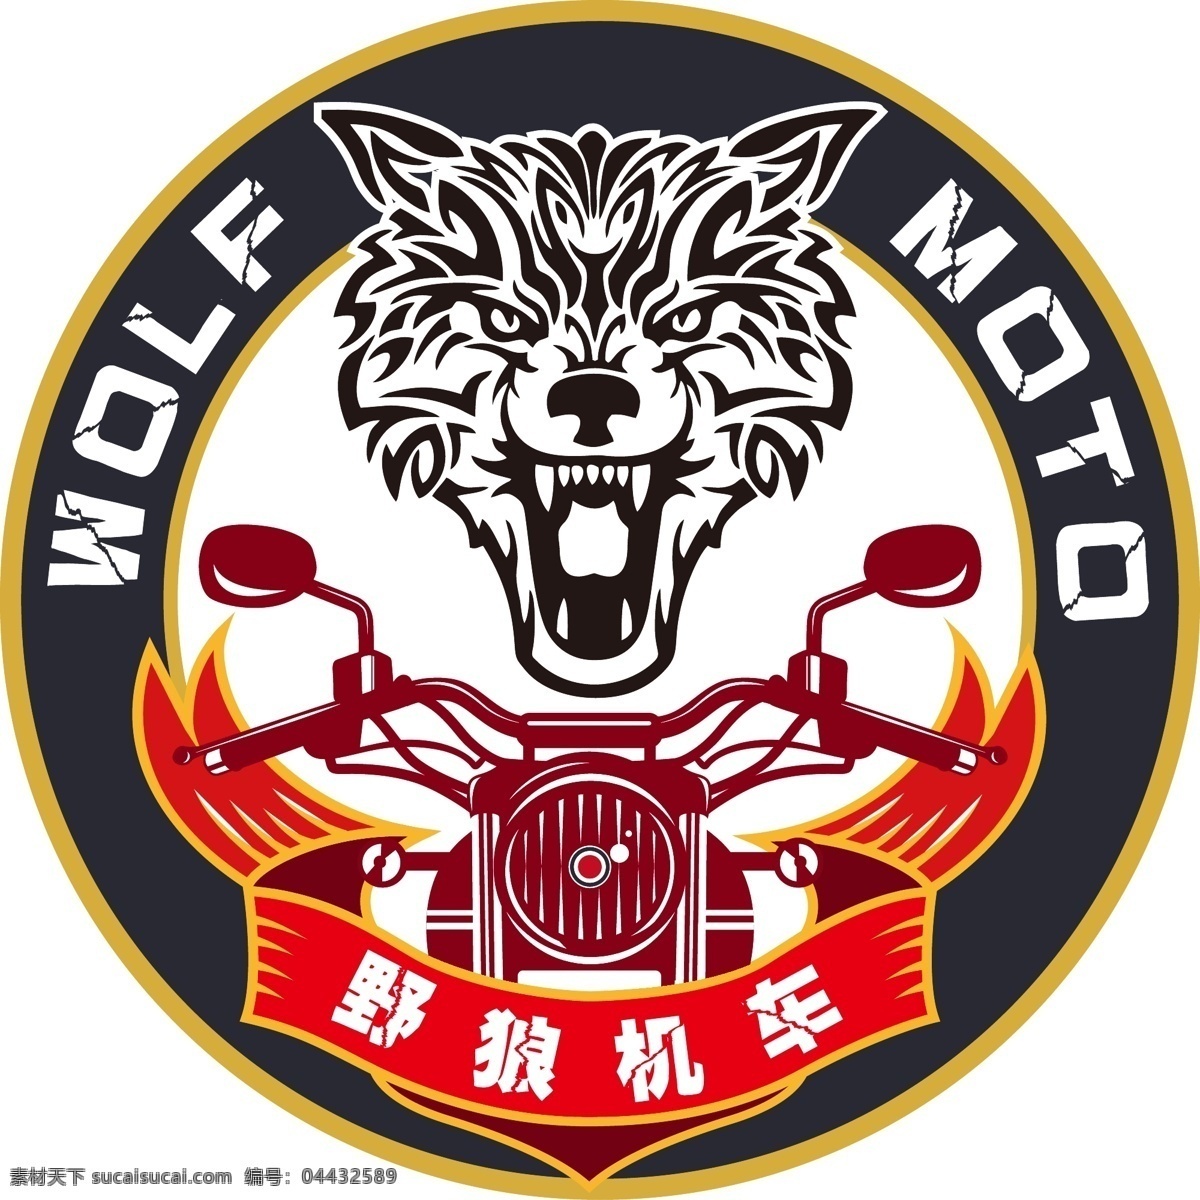 野狼机车 logo 宣传 标志